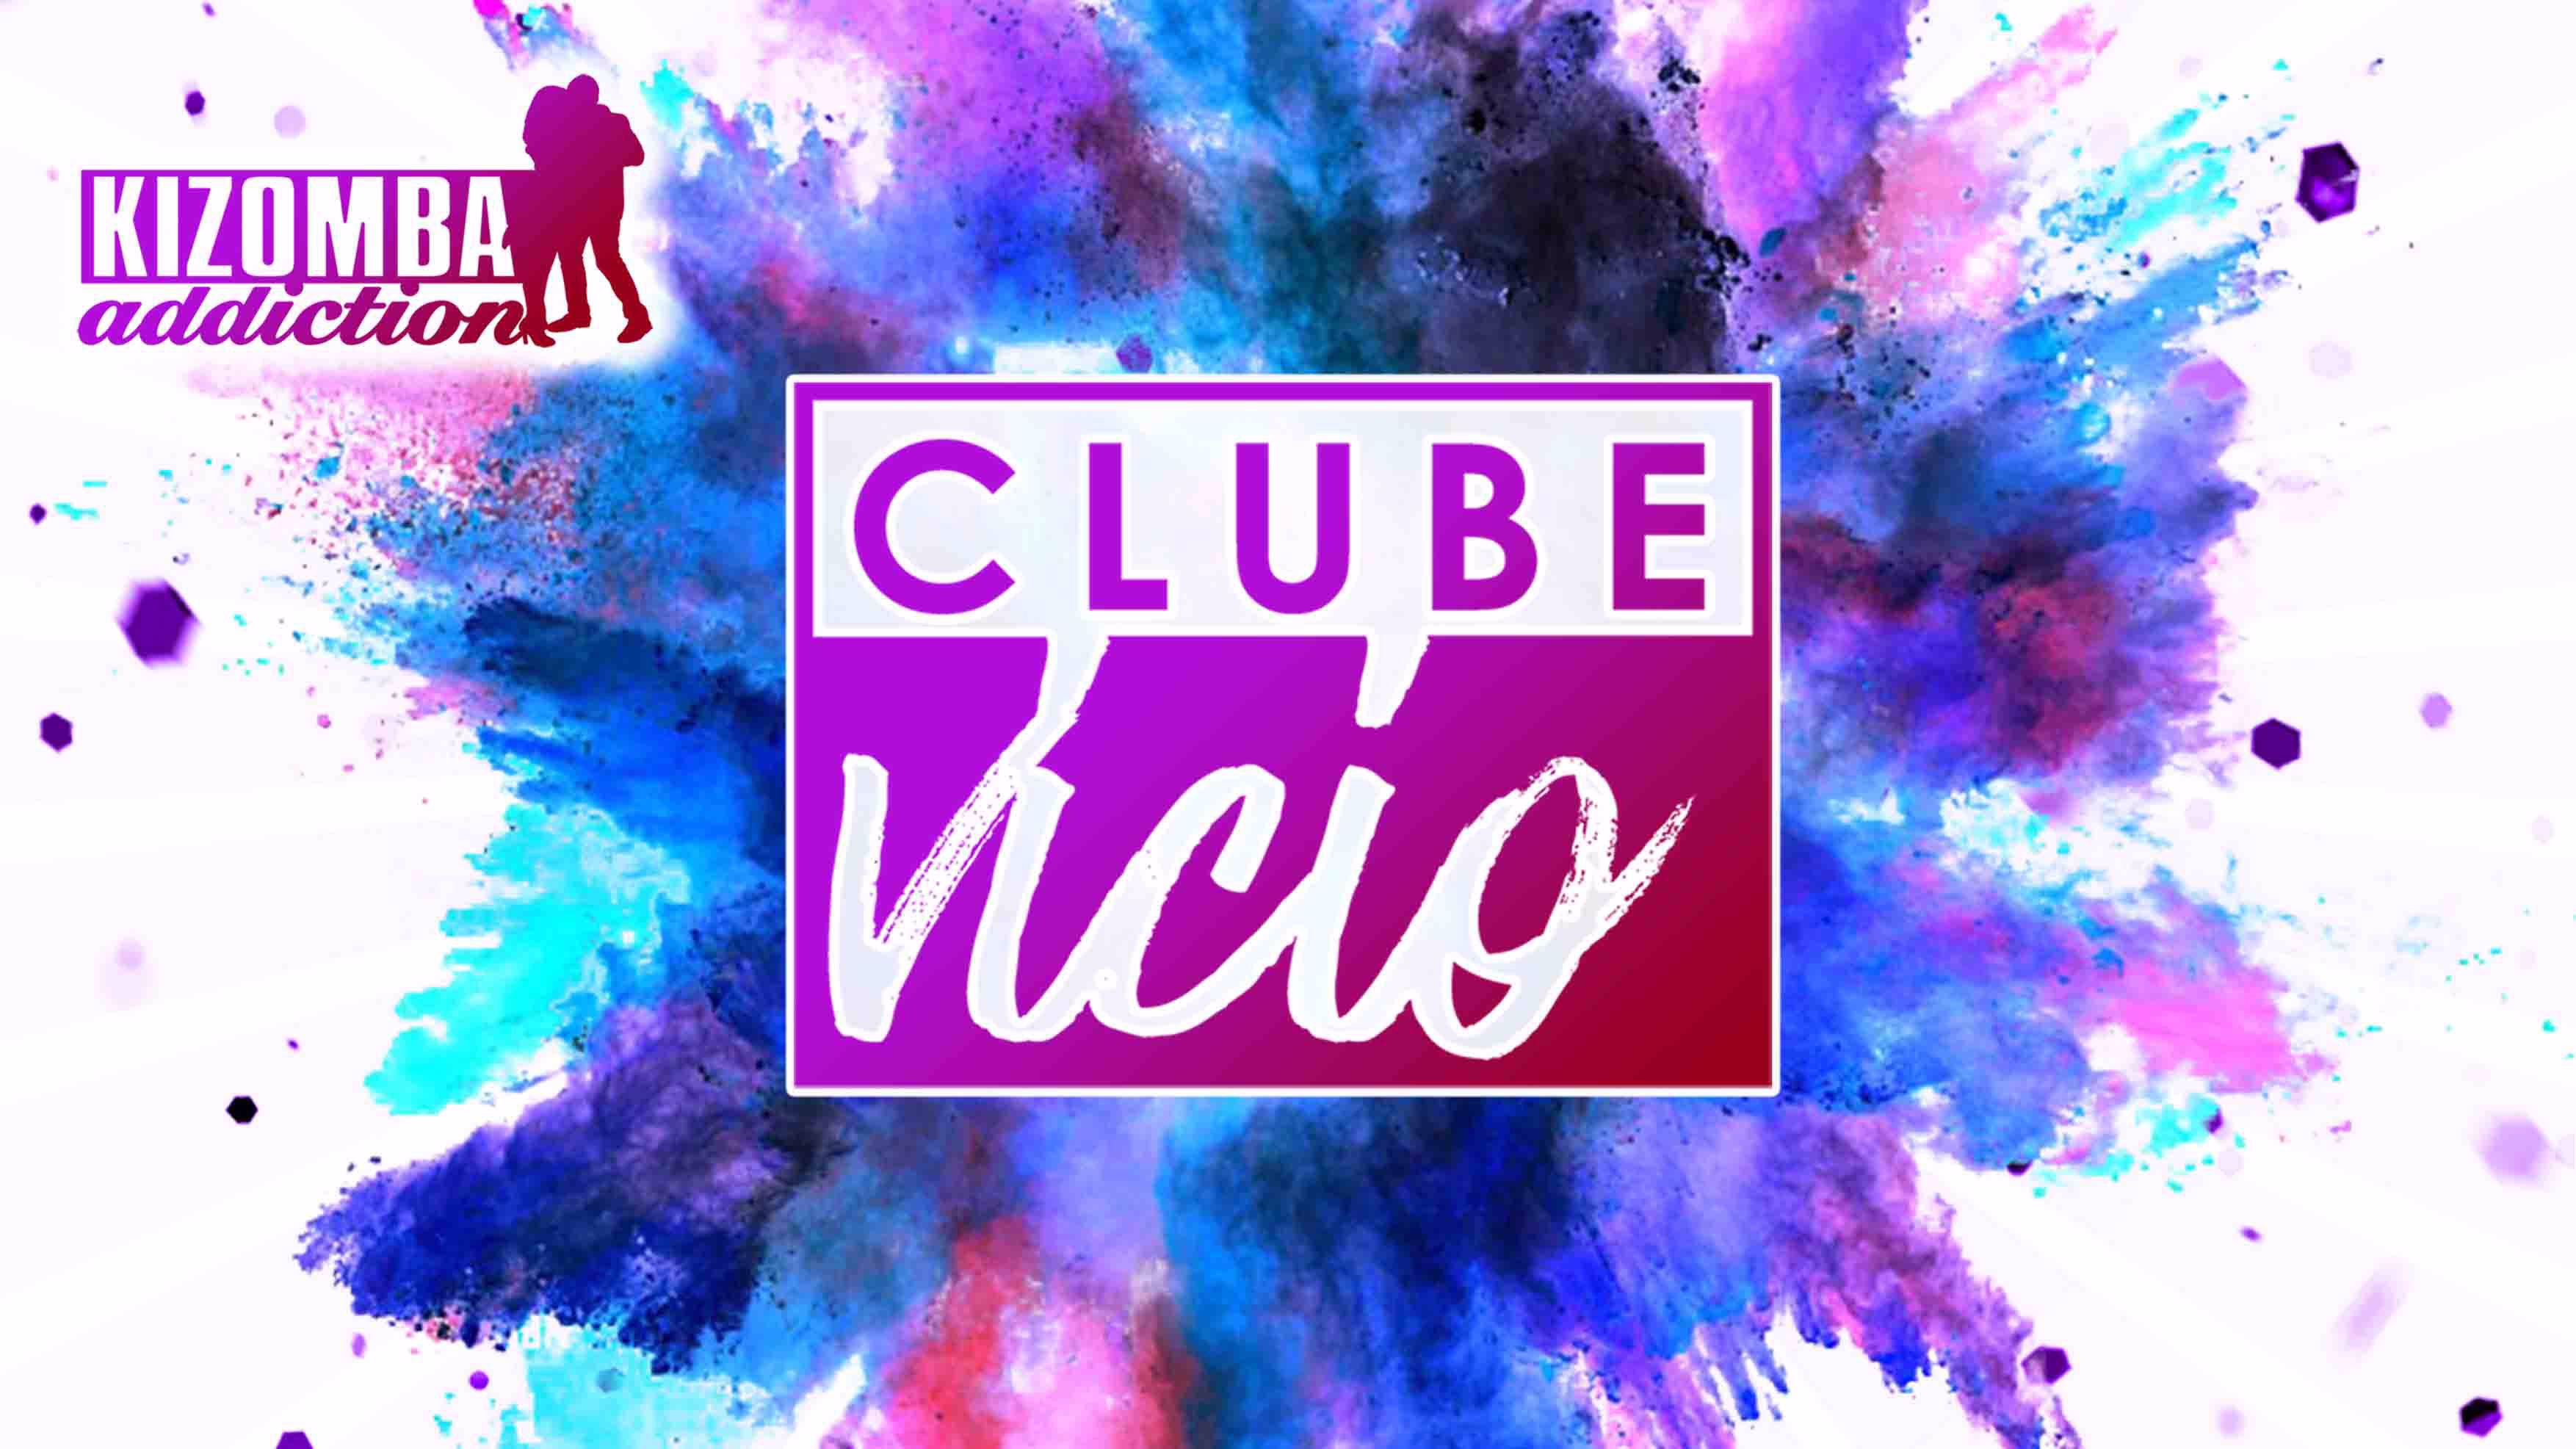 Cover Clube Vicio - London's Original Kizomba Party with Classes on Saturday